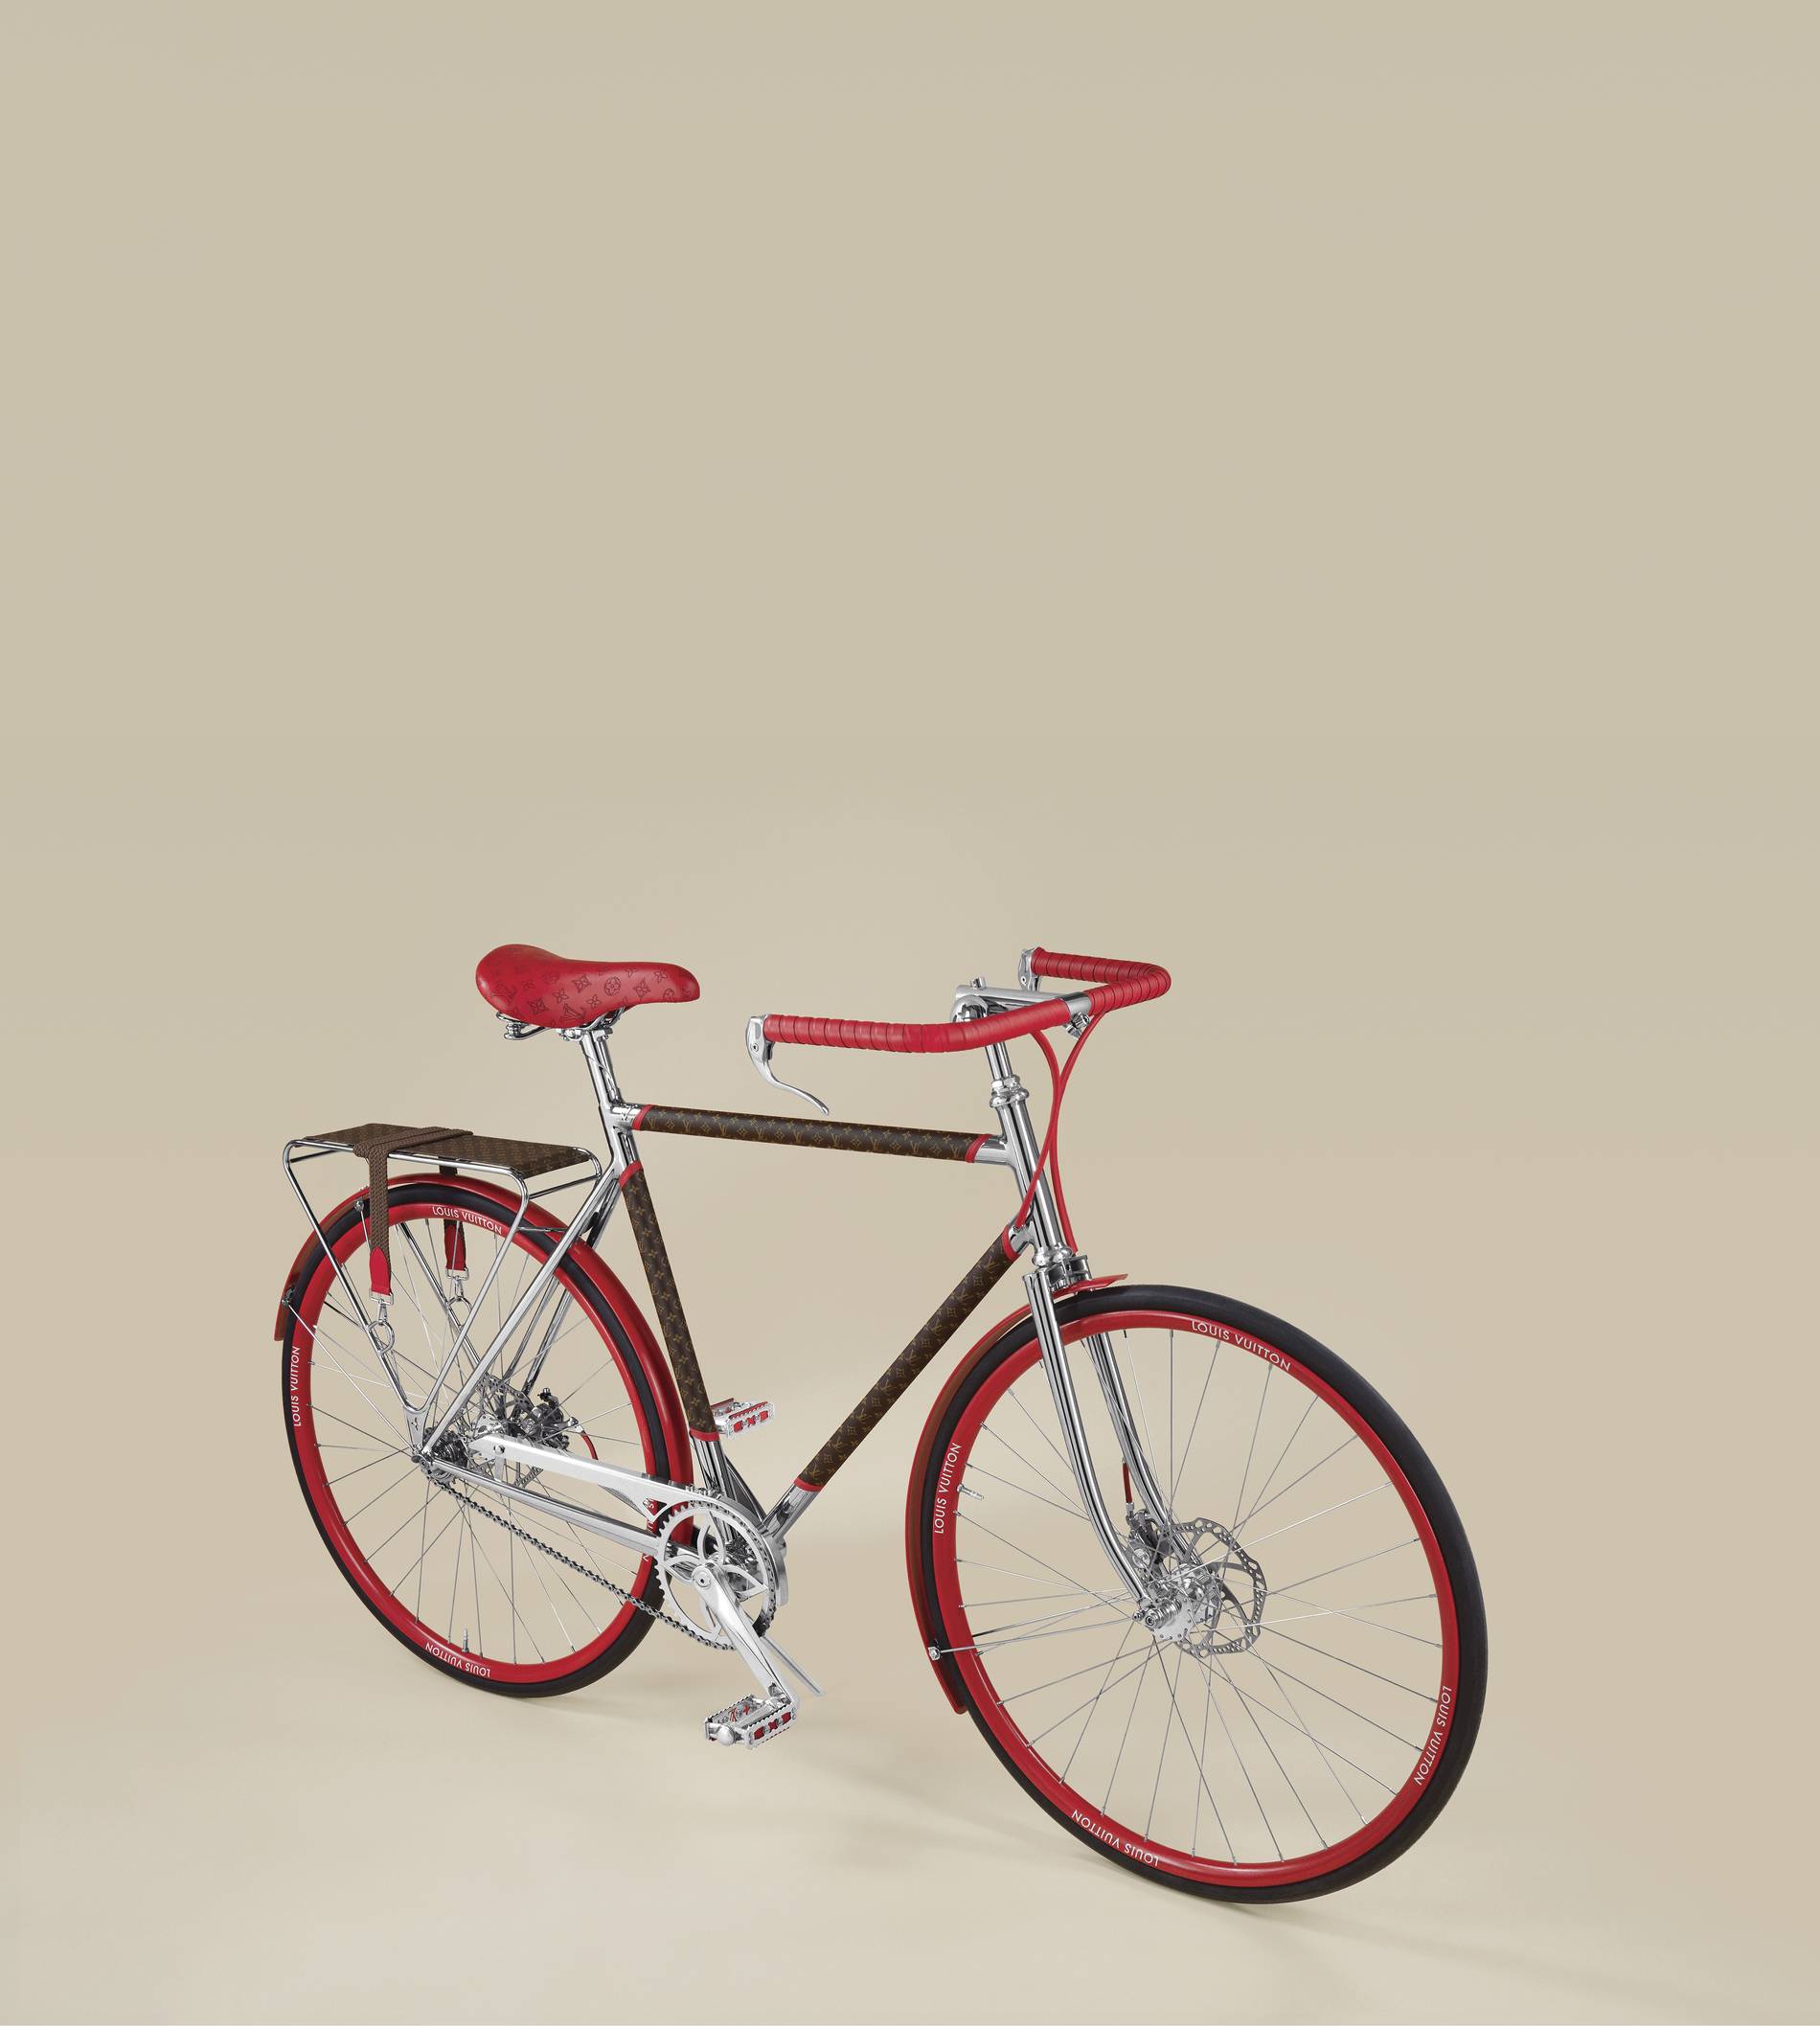 Louis Vuitton debuts the LV Bike